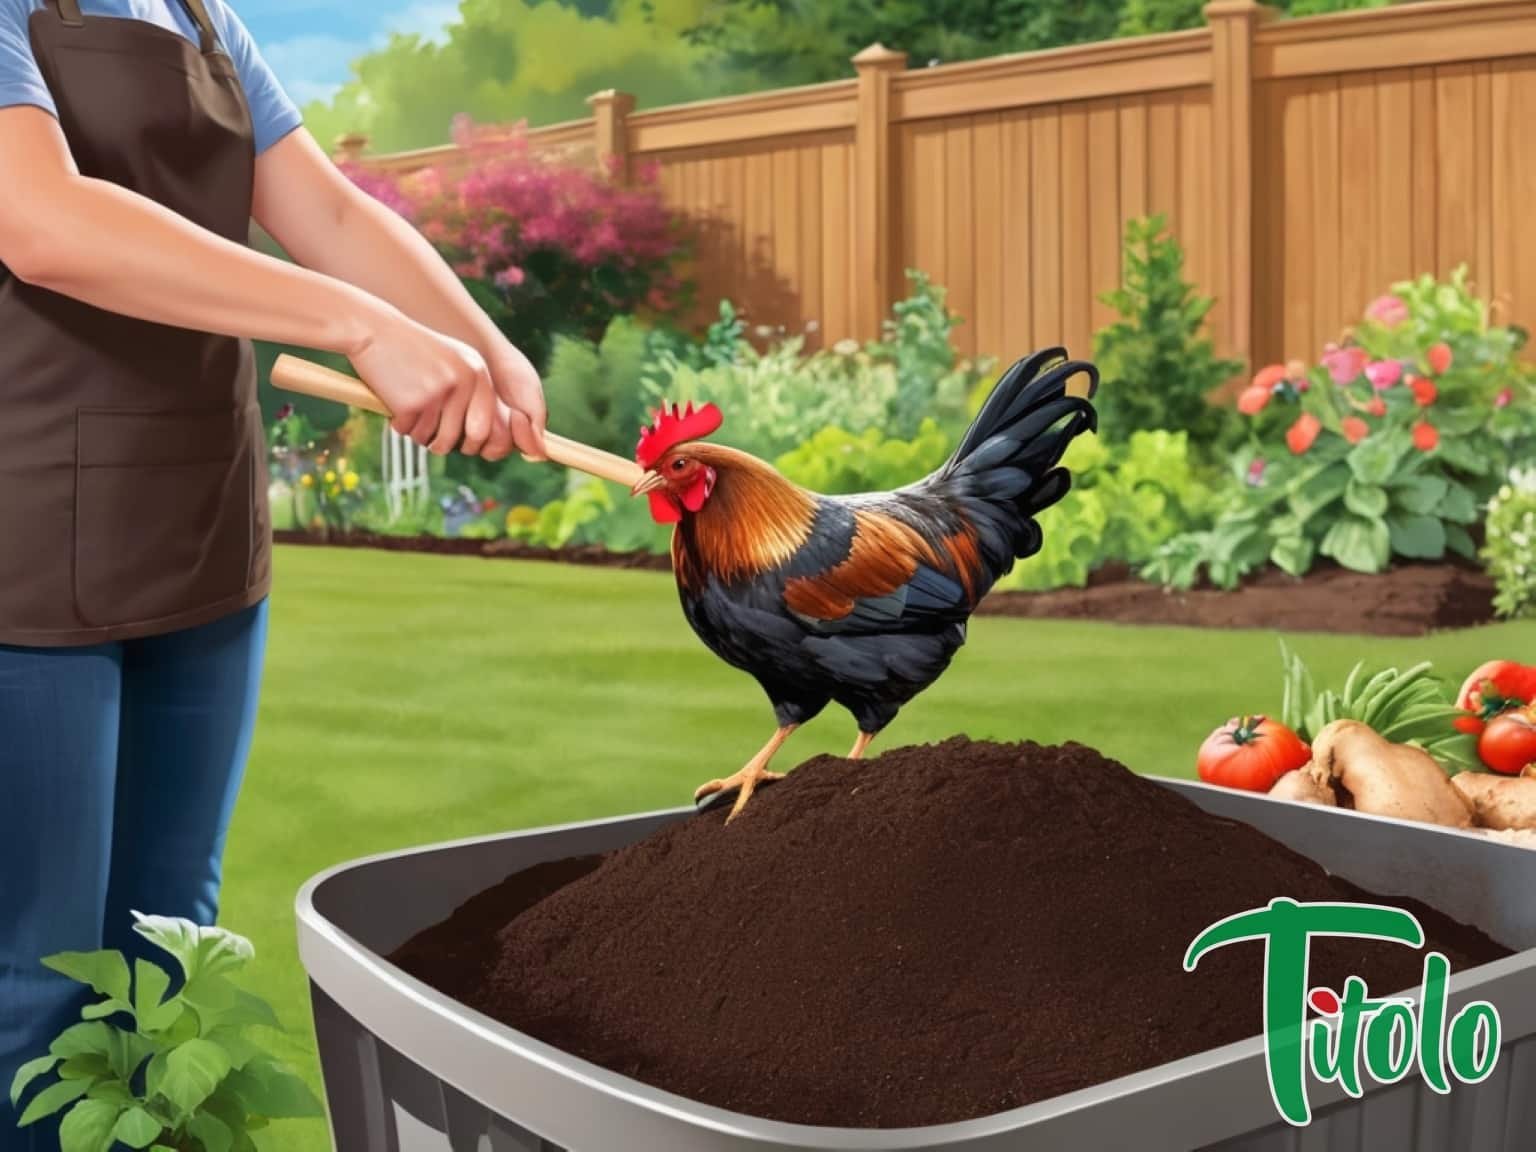 Effiziente Methoden zur Kompostierung von Hühnerabfällen Autarkes Leben 14